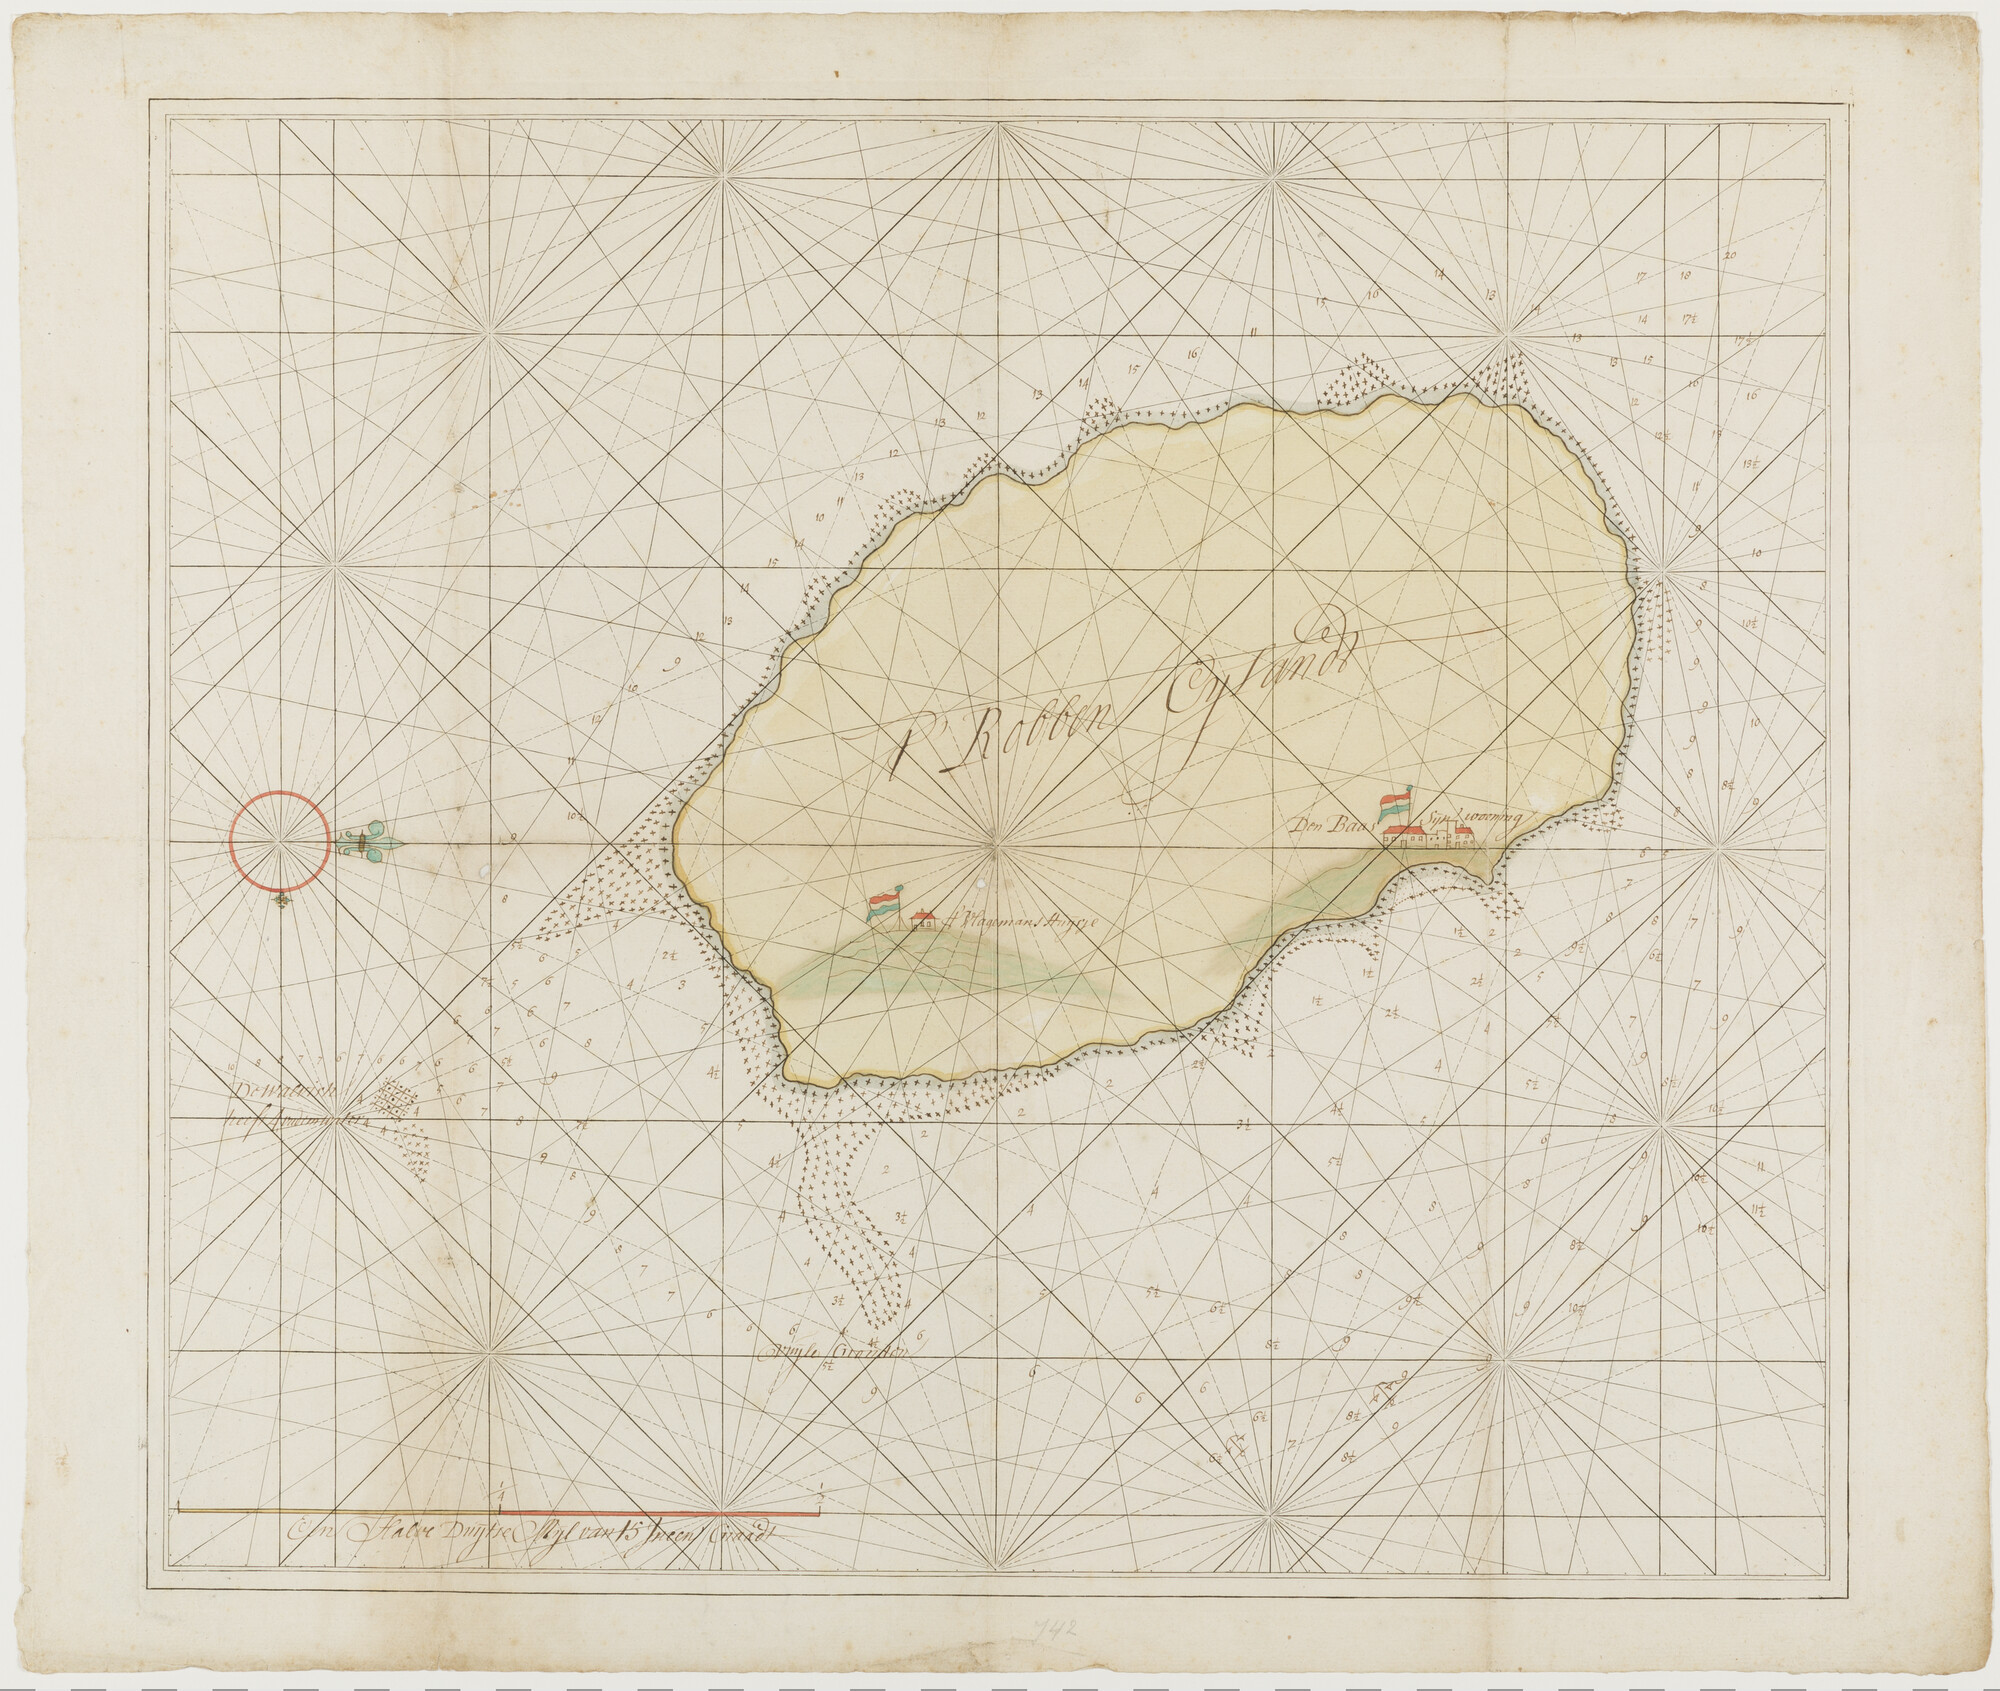 S.0007(01); Anonieme gekleurde handschriftkaart van Robbeneiland bij Zuid-Afrika, getekend op een gedrukt kaartnet; zeekaart